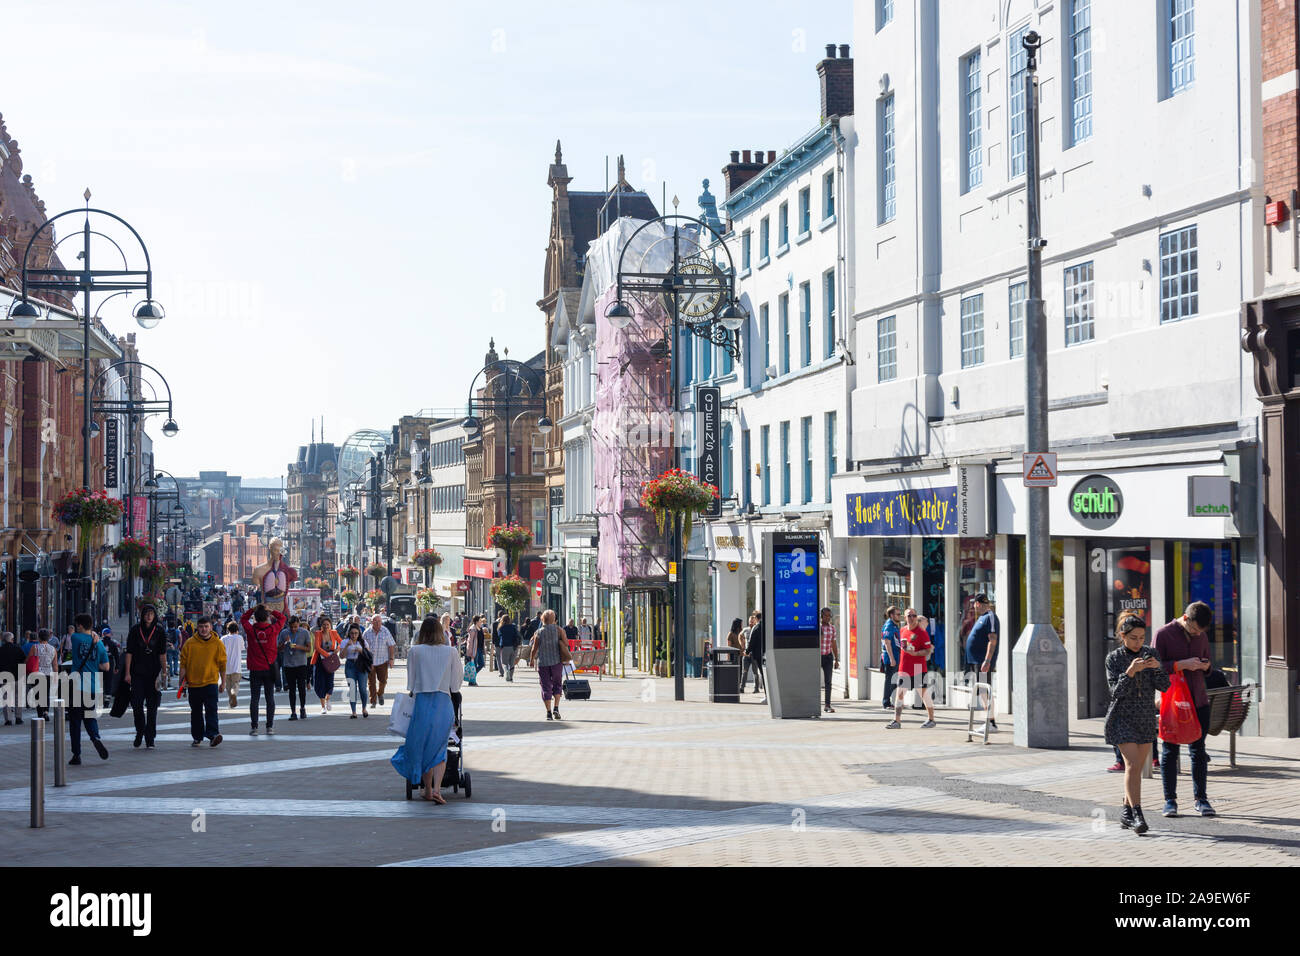 Pedestrianised Briggate shopping street, Leeds, West Yorkshire, England, United Kingdom Stock Photo